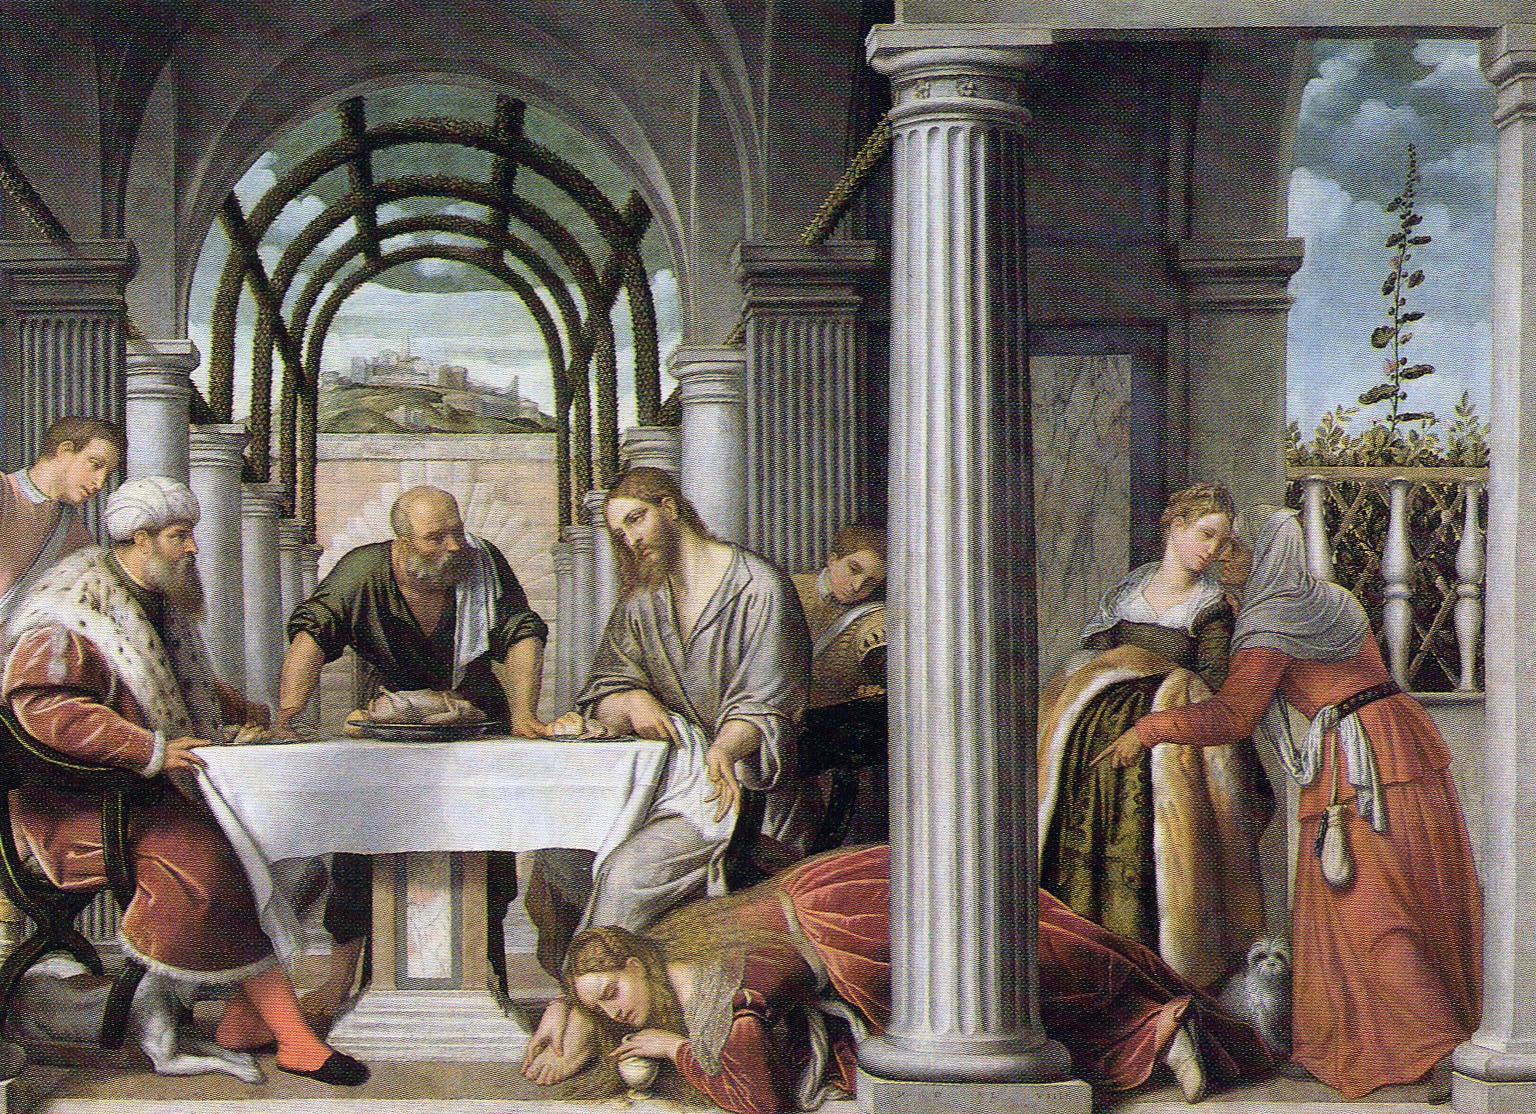 Moretto, Cena in casa di Simone il Fariseo, 1544, Stanza della Segnatura, Chiesa della Pietà, Venezia